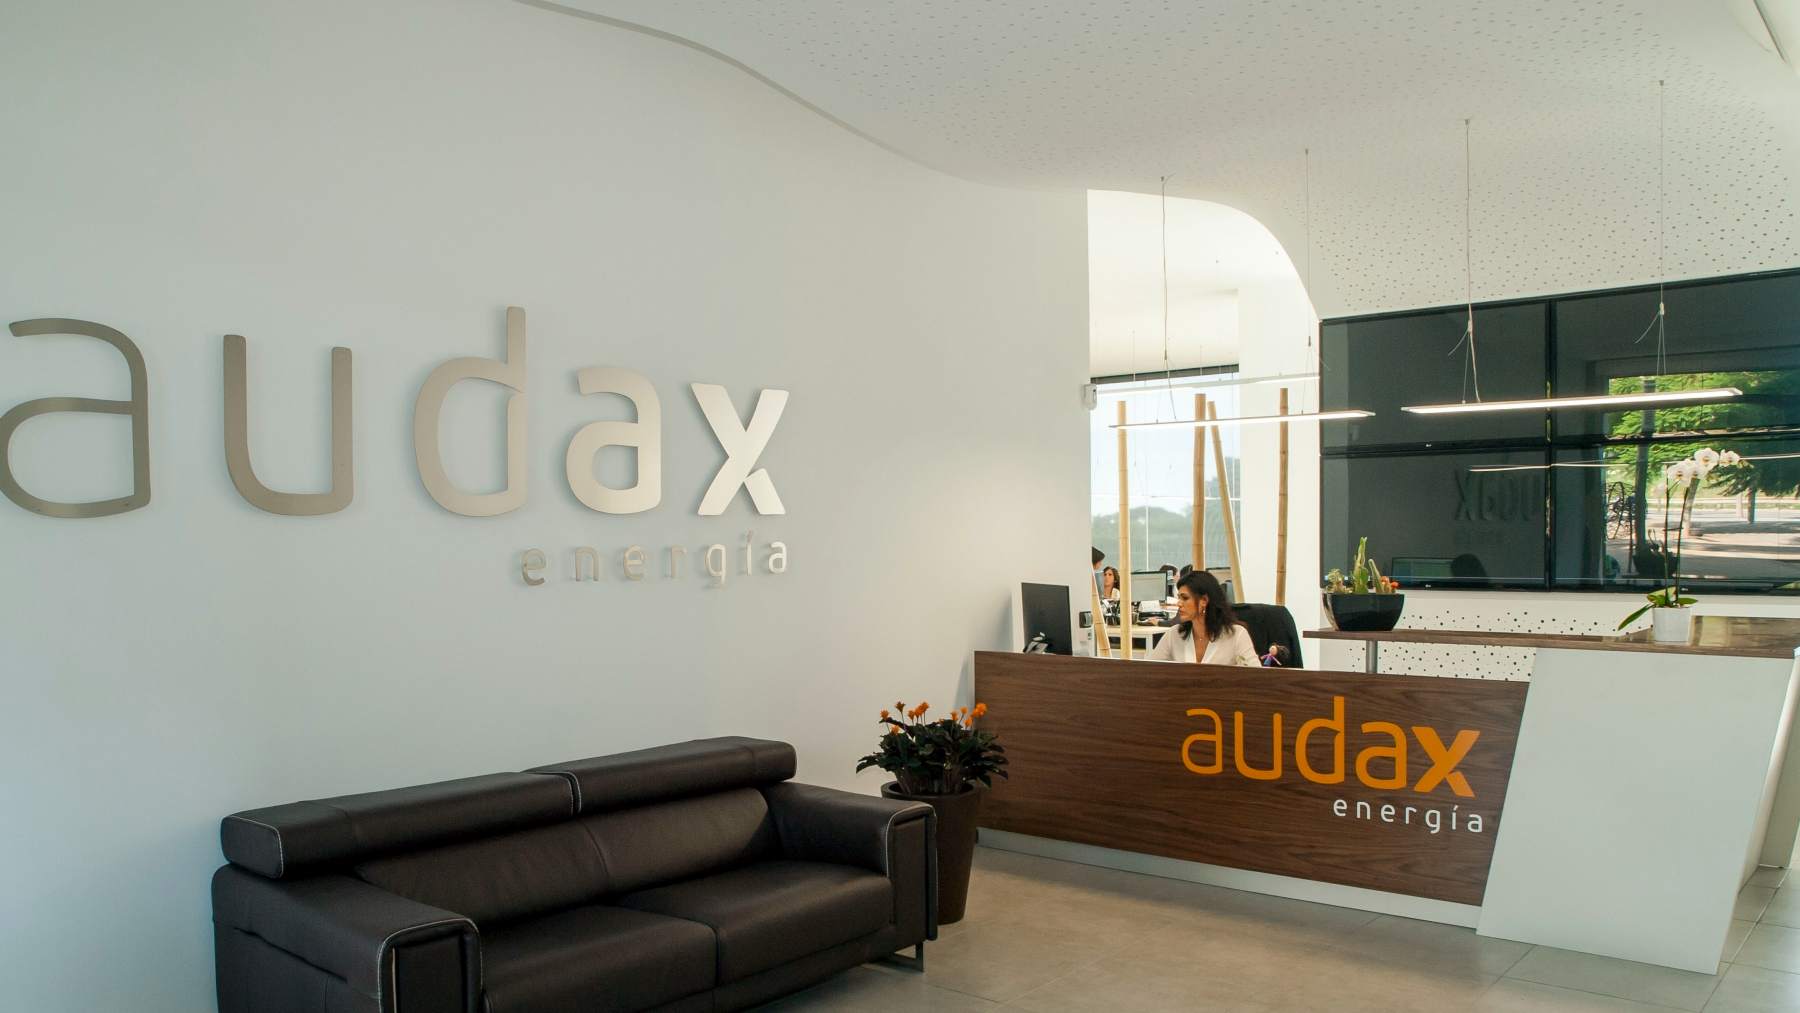 Oficinas de Audax, en una imagen de archivo. EP.